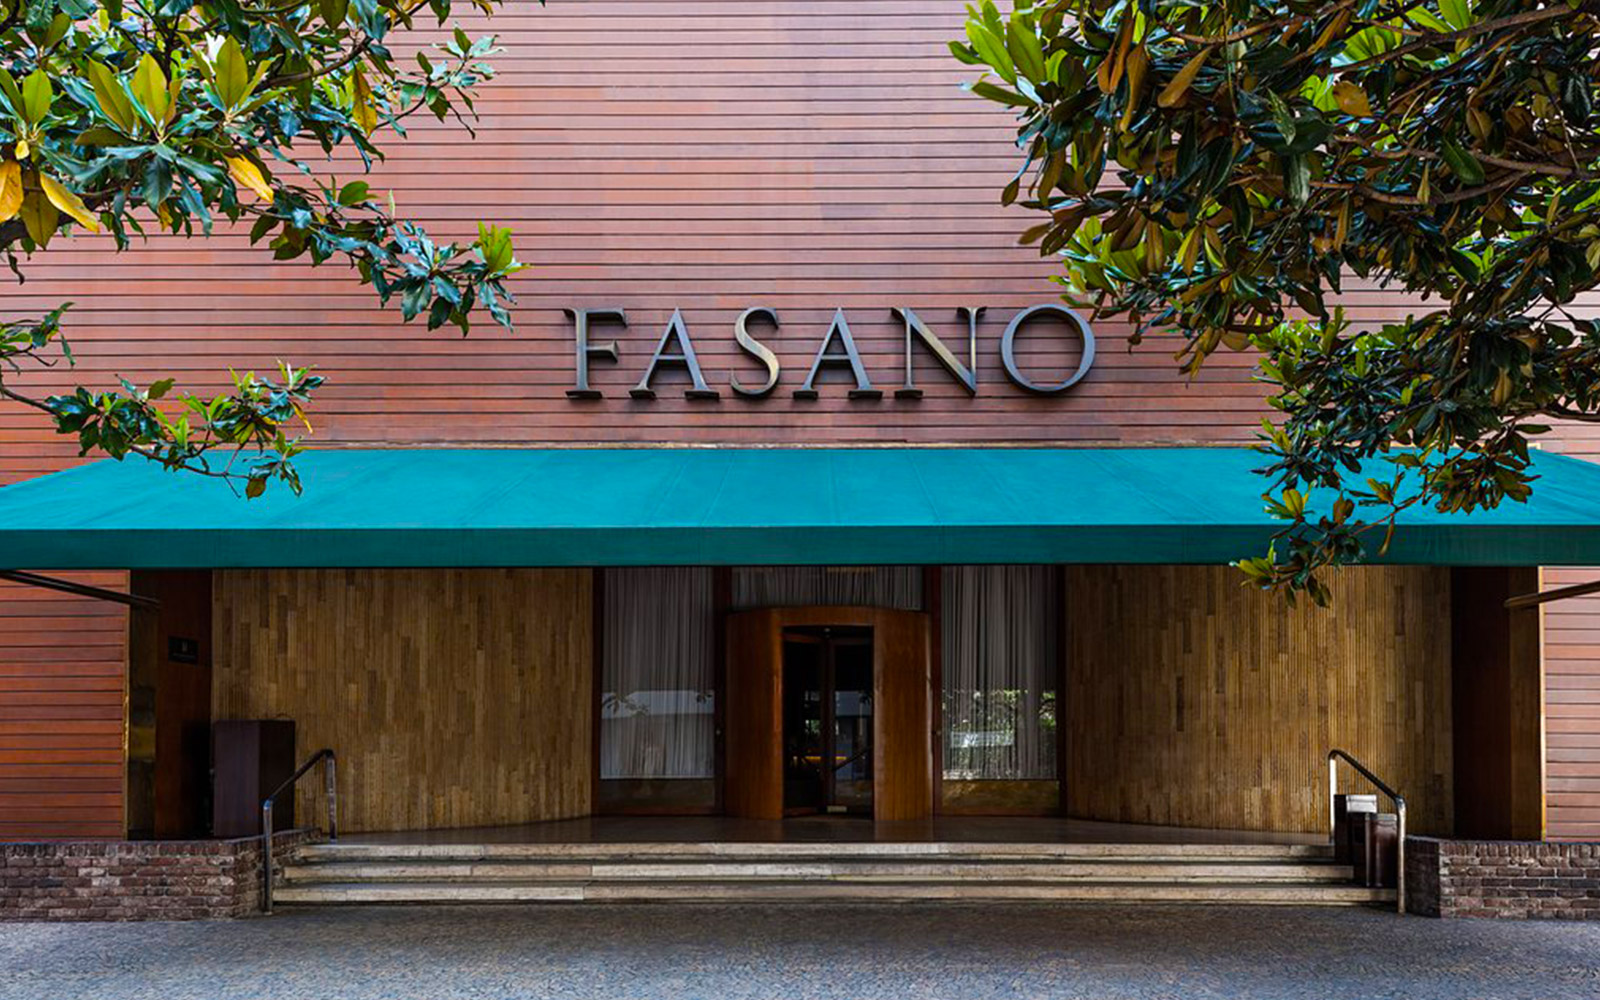 Fasano São Paulo